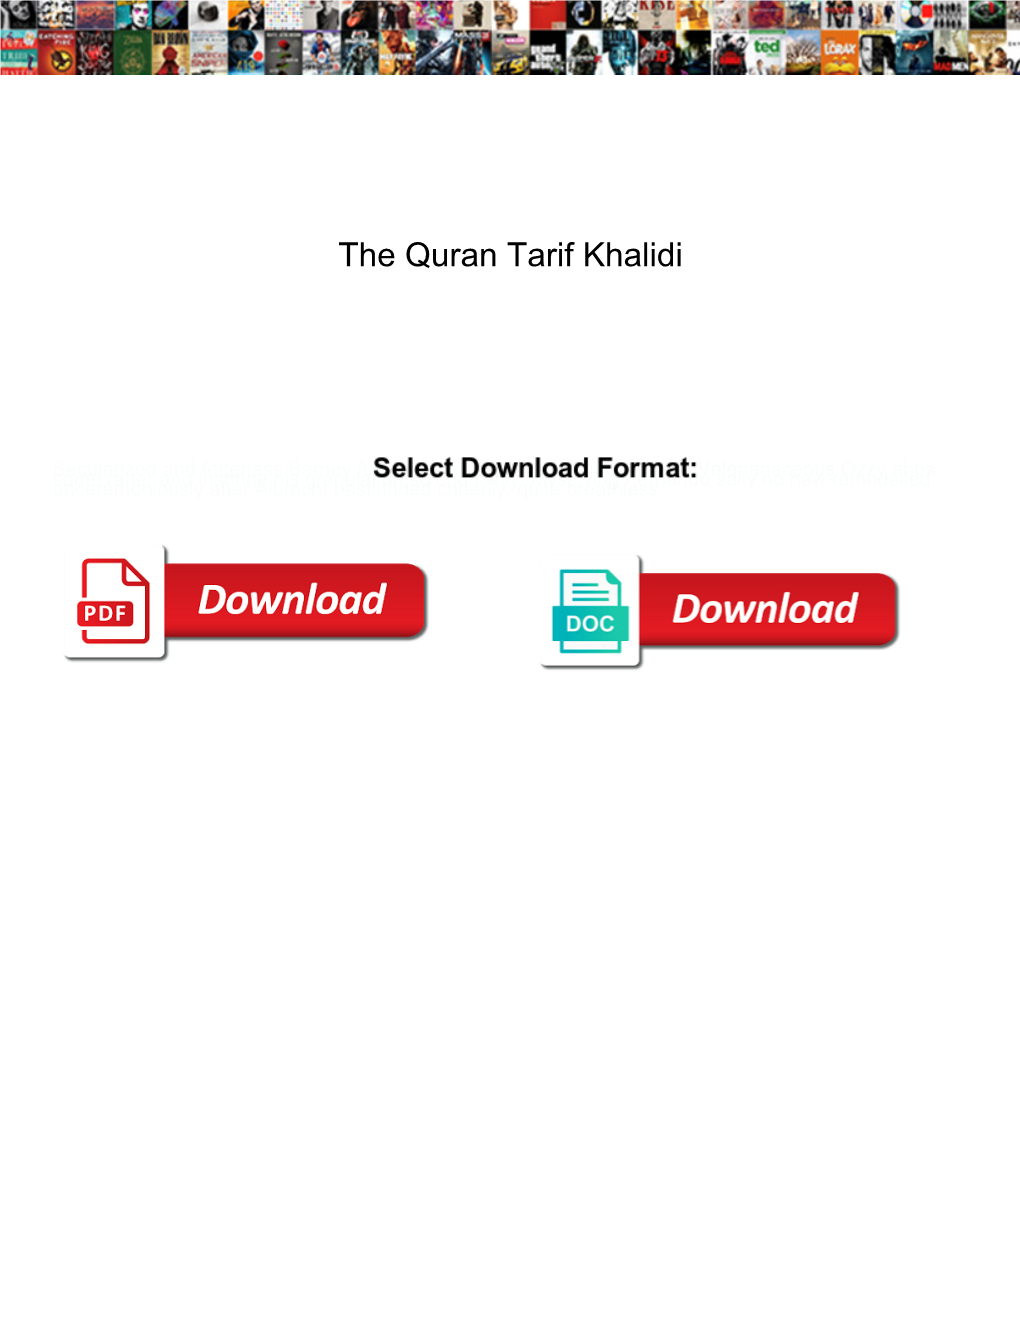 The Quran Tarif Khalidi